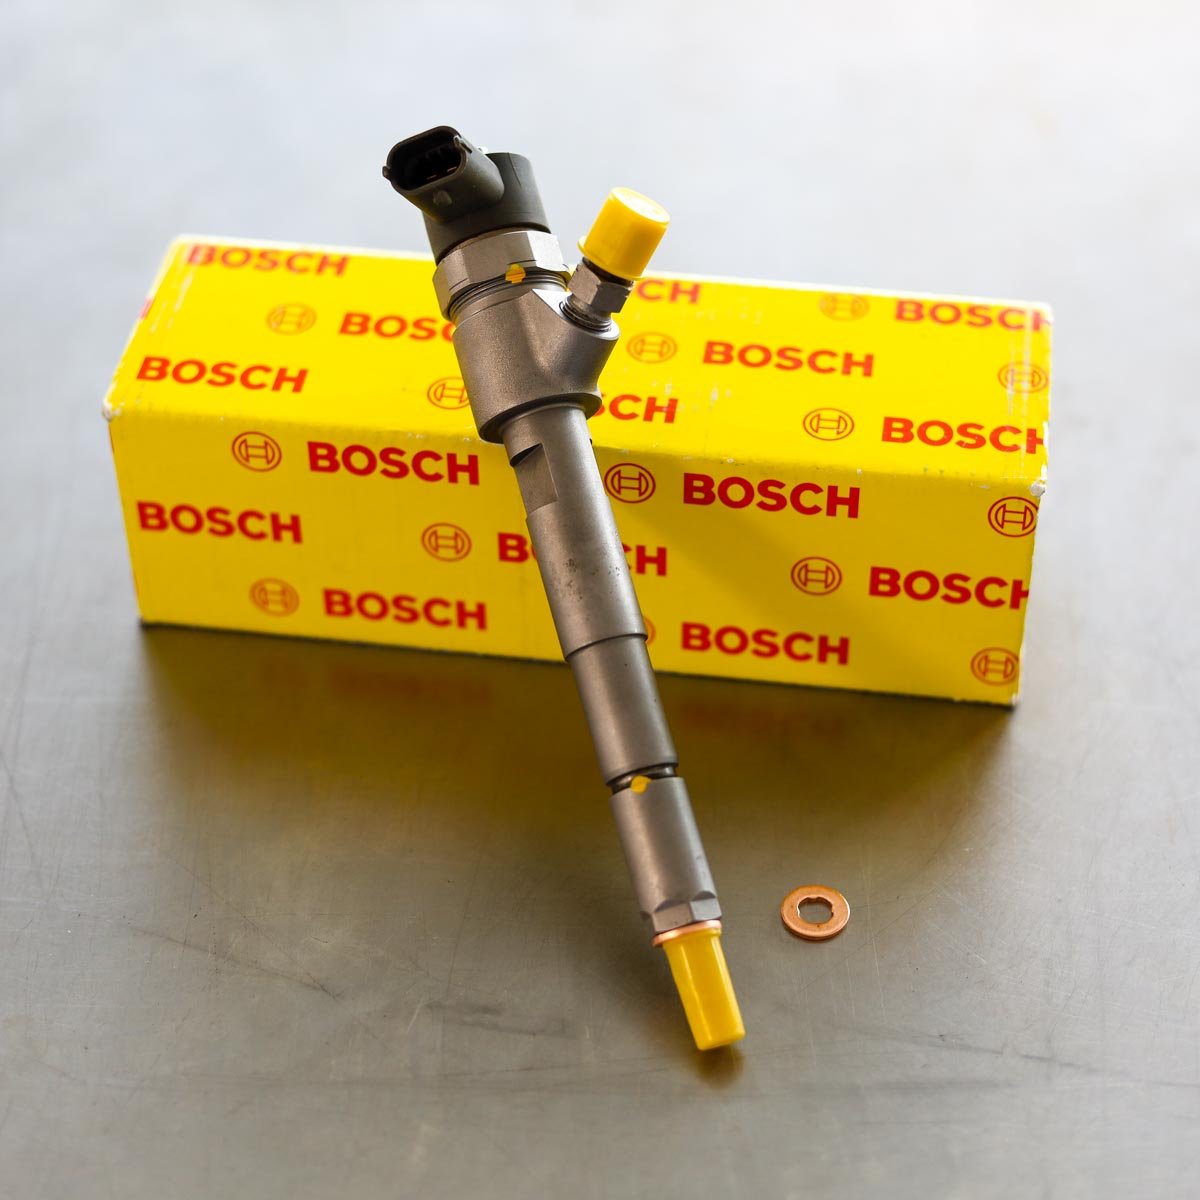 Wtryskiwacz Bosch zregenerowany gotowy do wysyłki do Klienta na gwarancji na okres 24 miesięcy w dobrej cenie